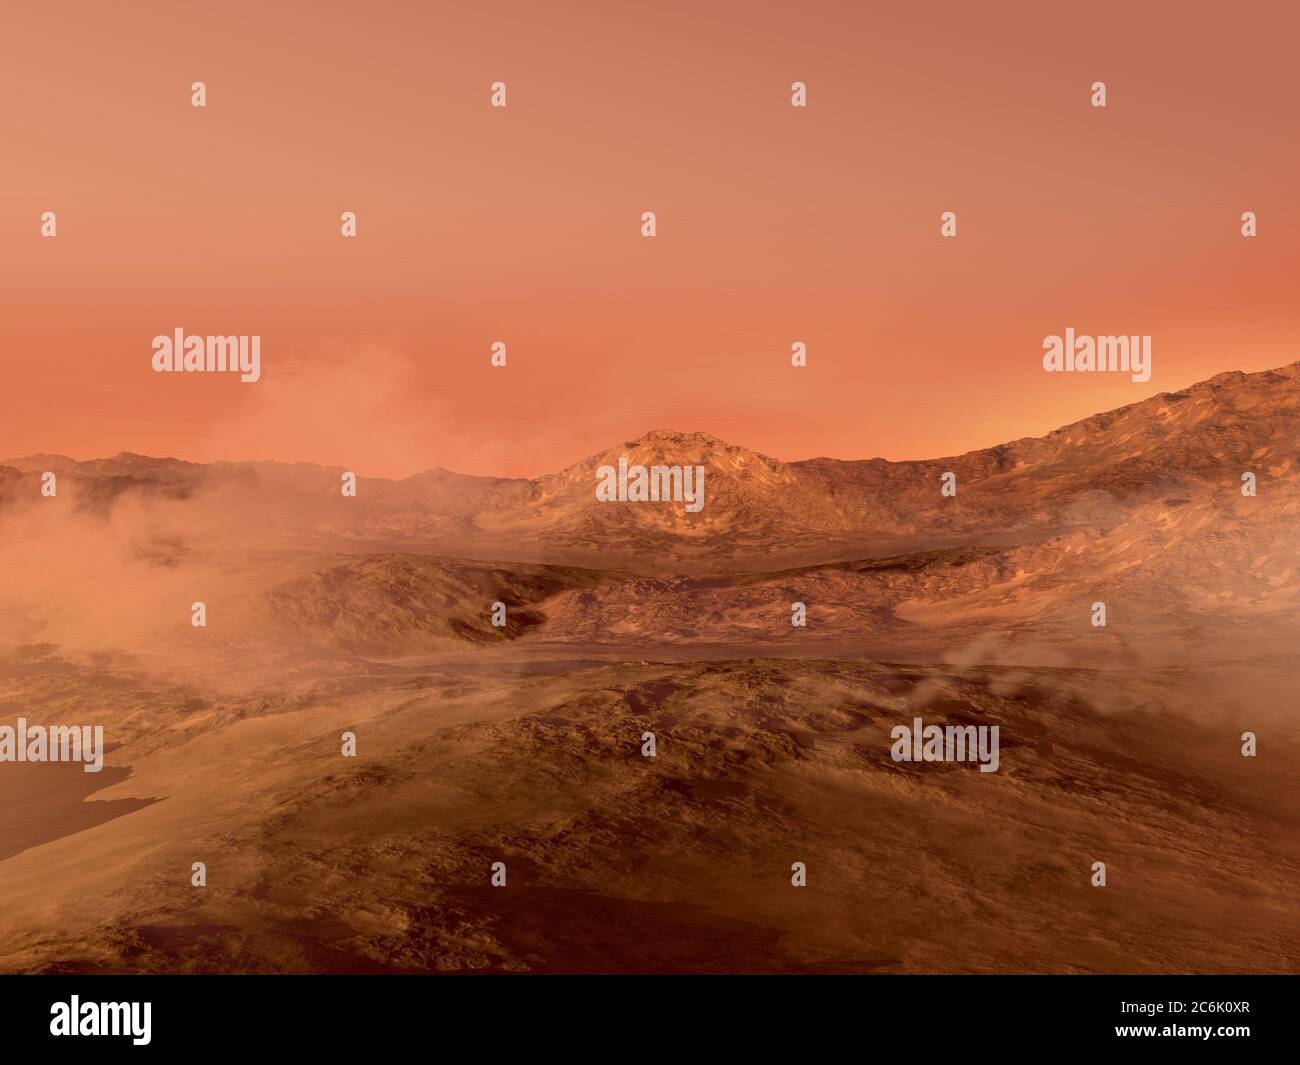 Paysage de Mars rendu 3D avec un terrain rocailleux rouge couvert de brouillard, pour la science-fiction ou l'exploration spatiale. Banque D'Images